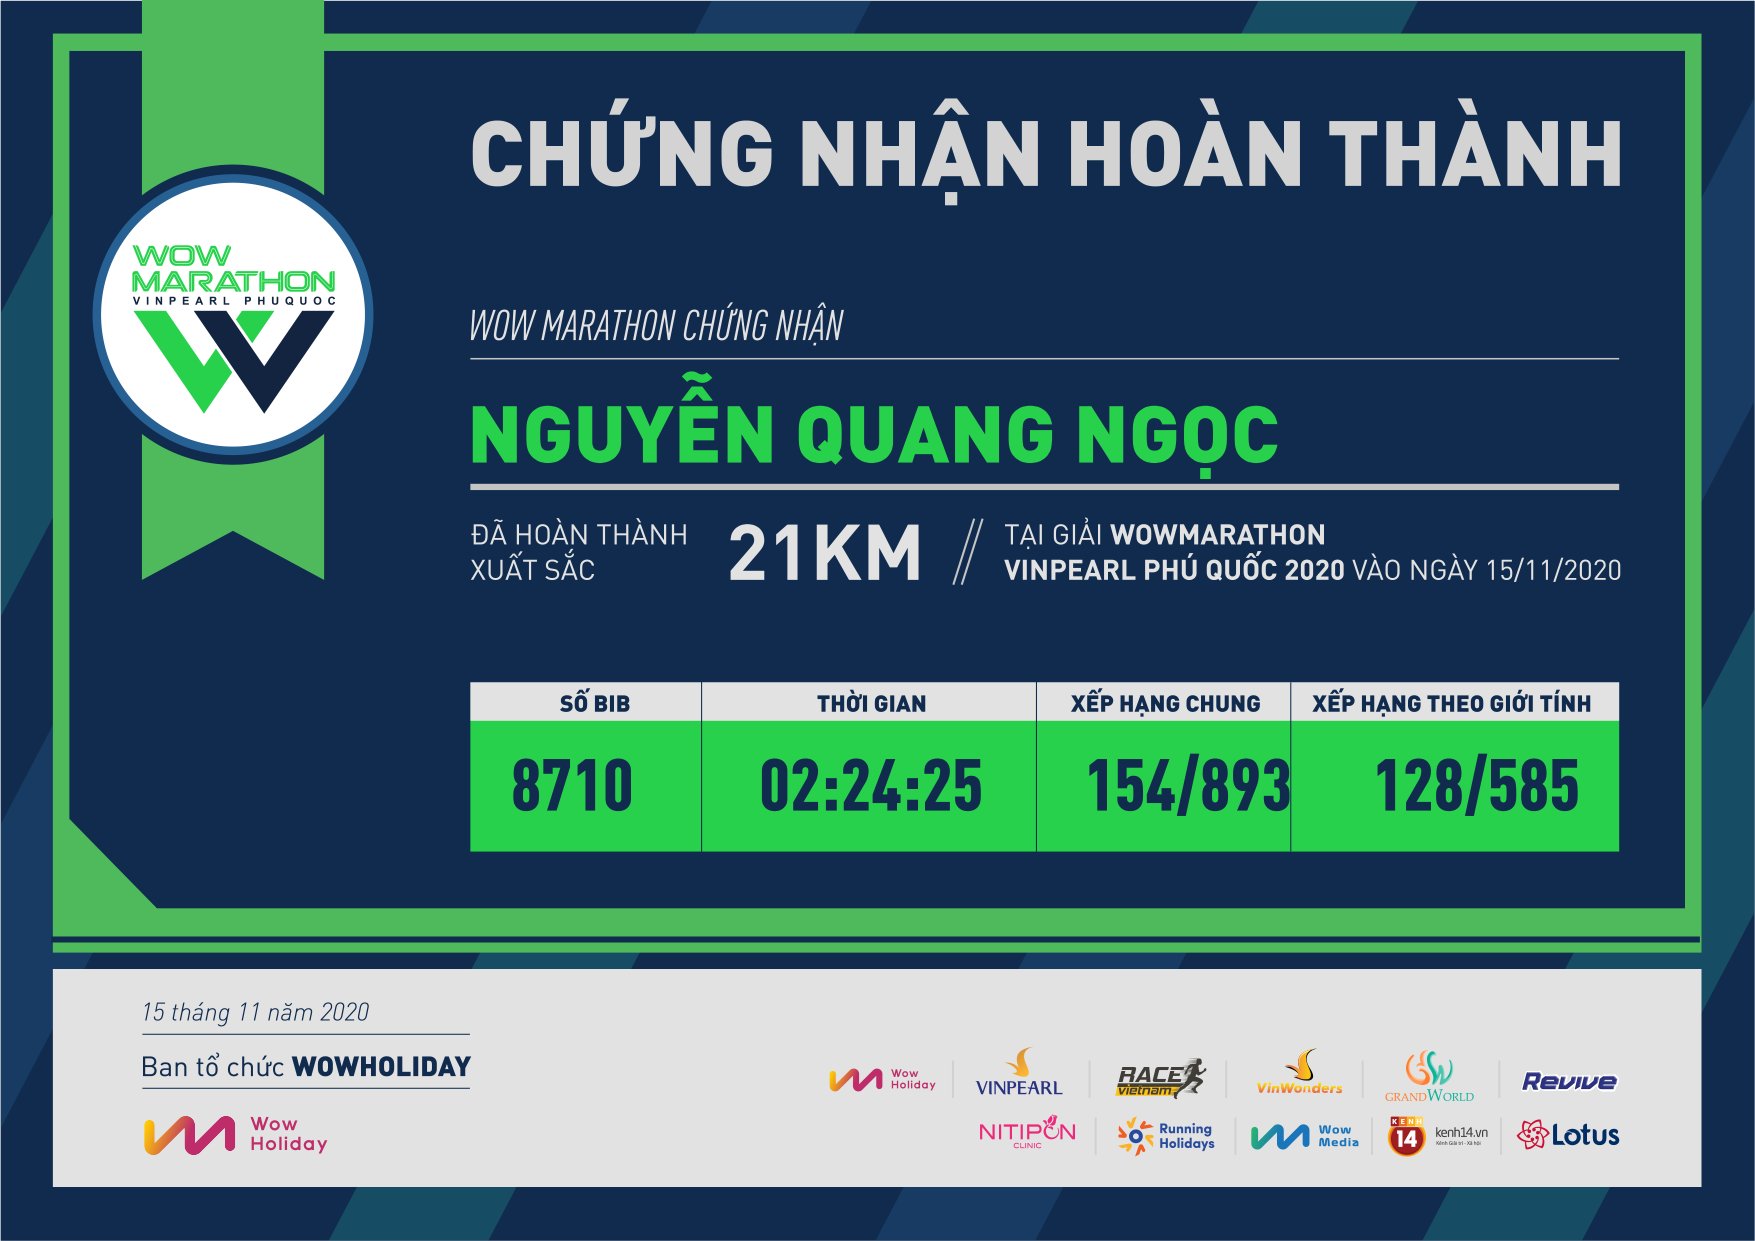 8710 - Nguyễn Quang Ngọc